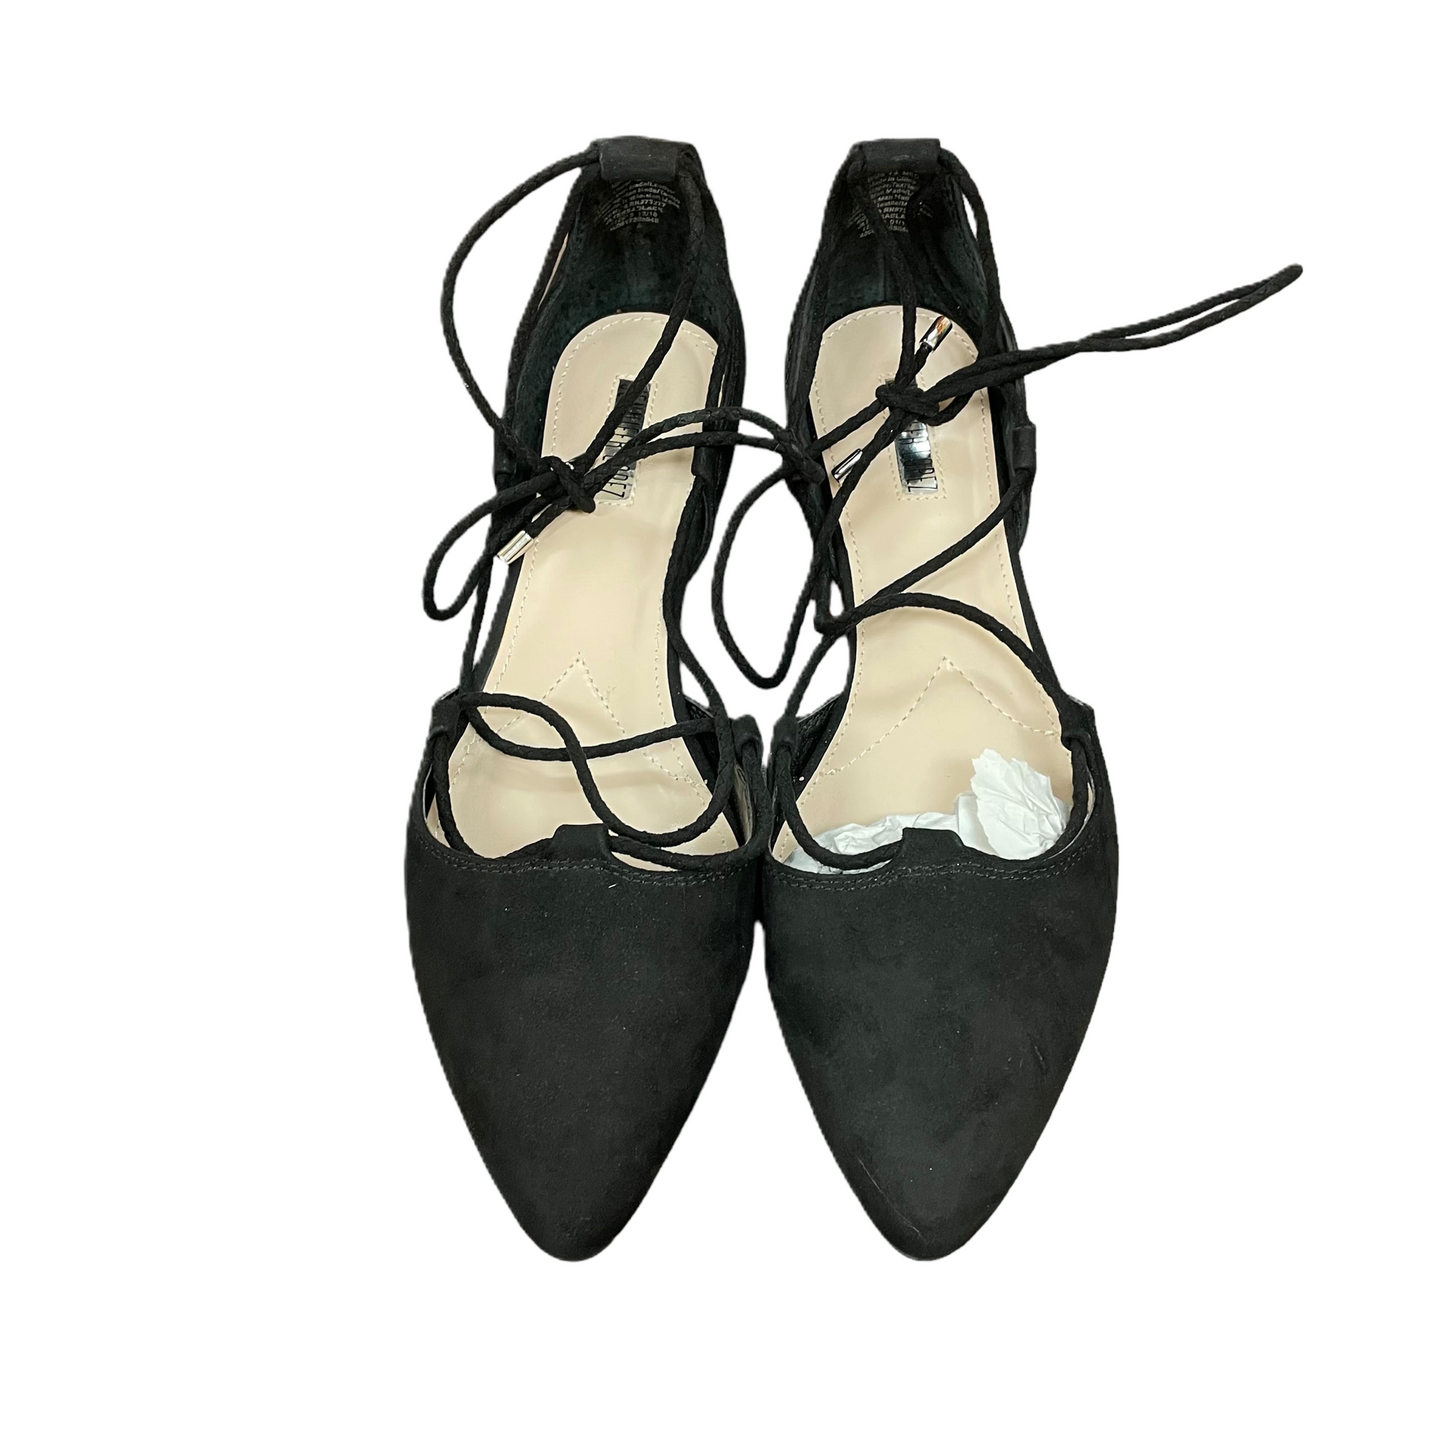 Black Shoes Flats By Jennifer Lopez, Size: 7.5